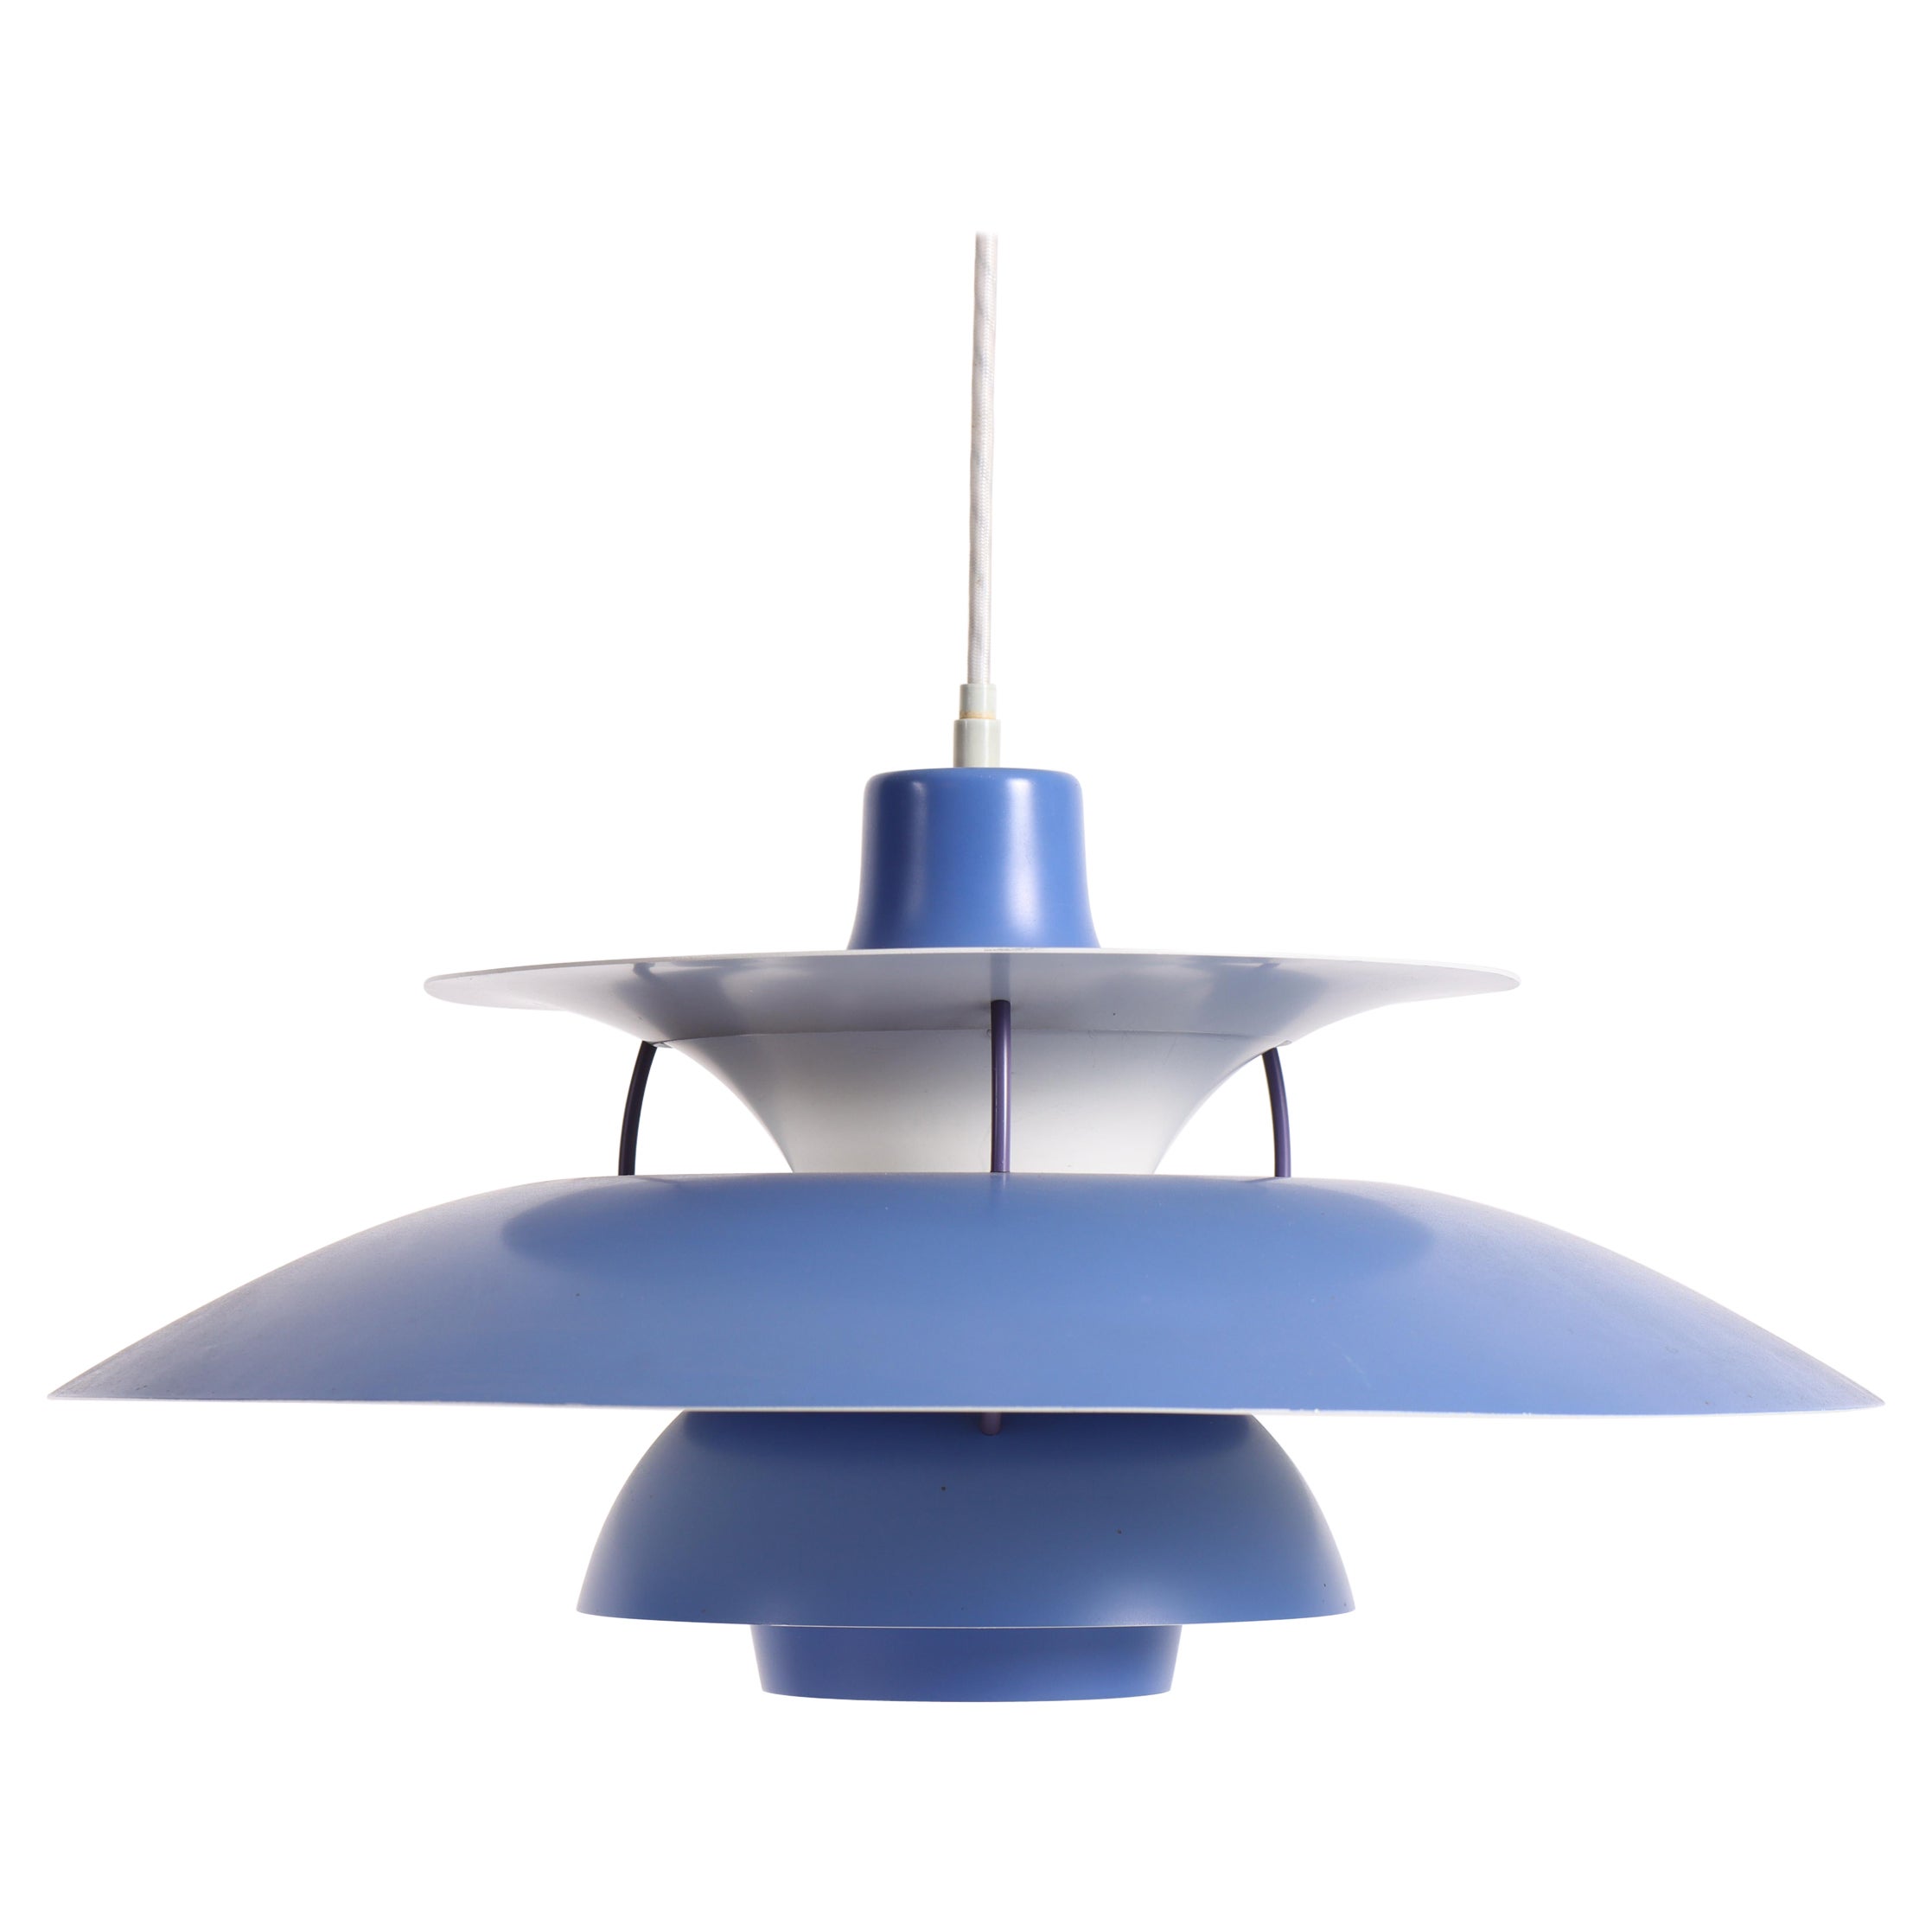 Midcentury "PH5" Pendant by Poul Henningsen, Danish Design, 1950s